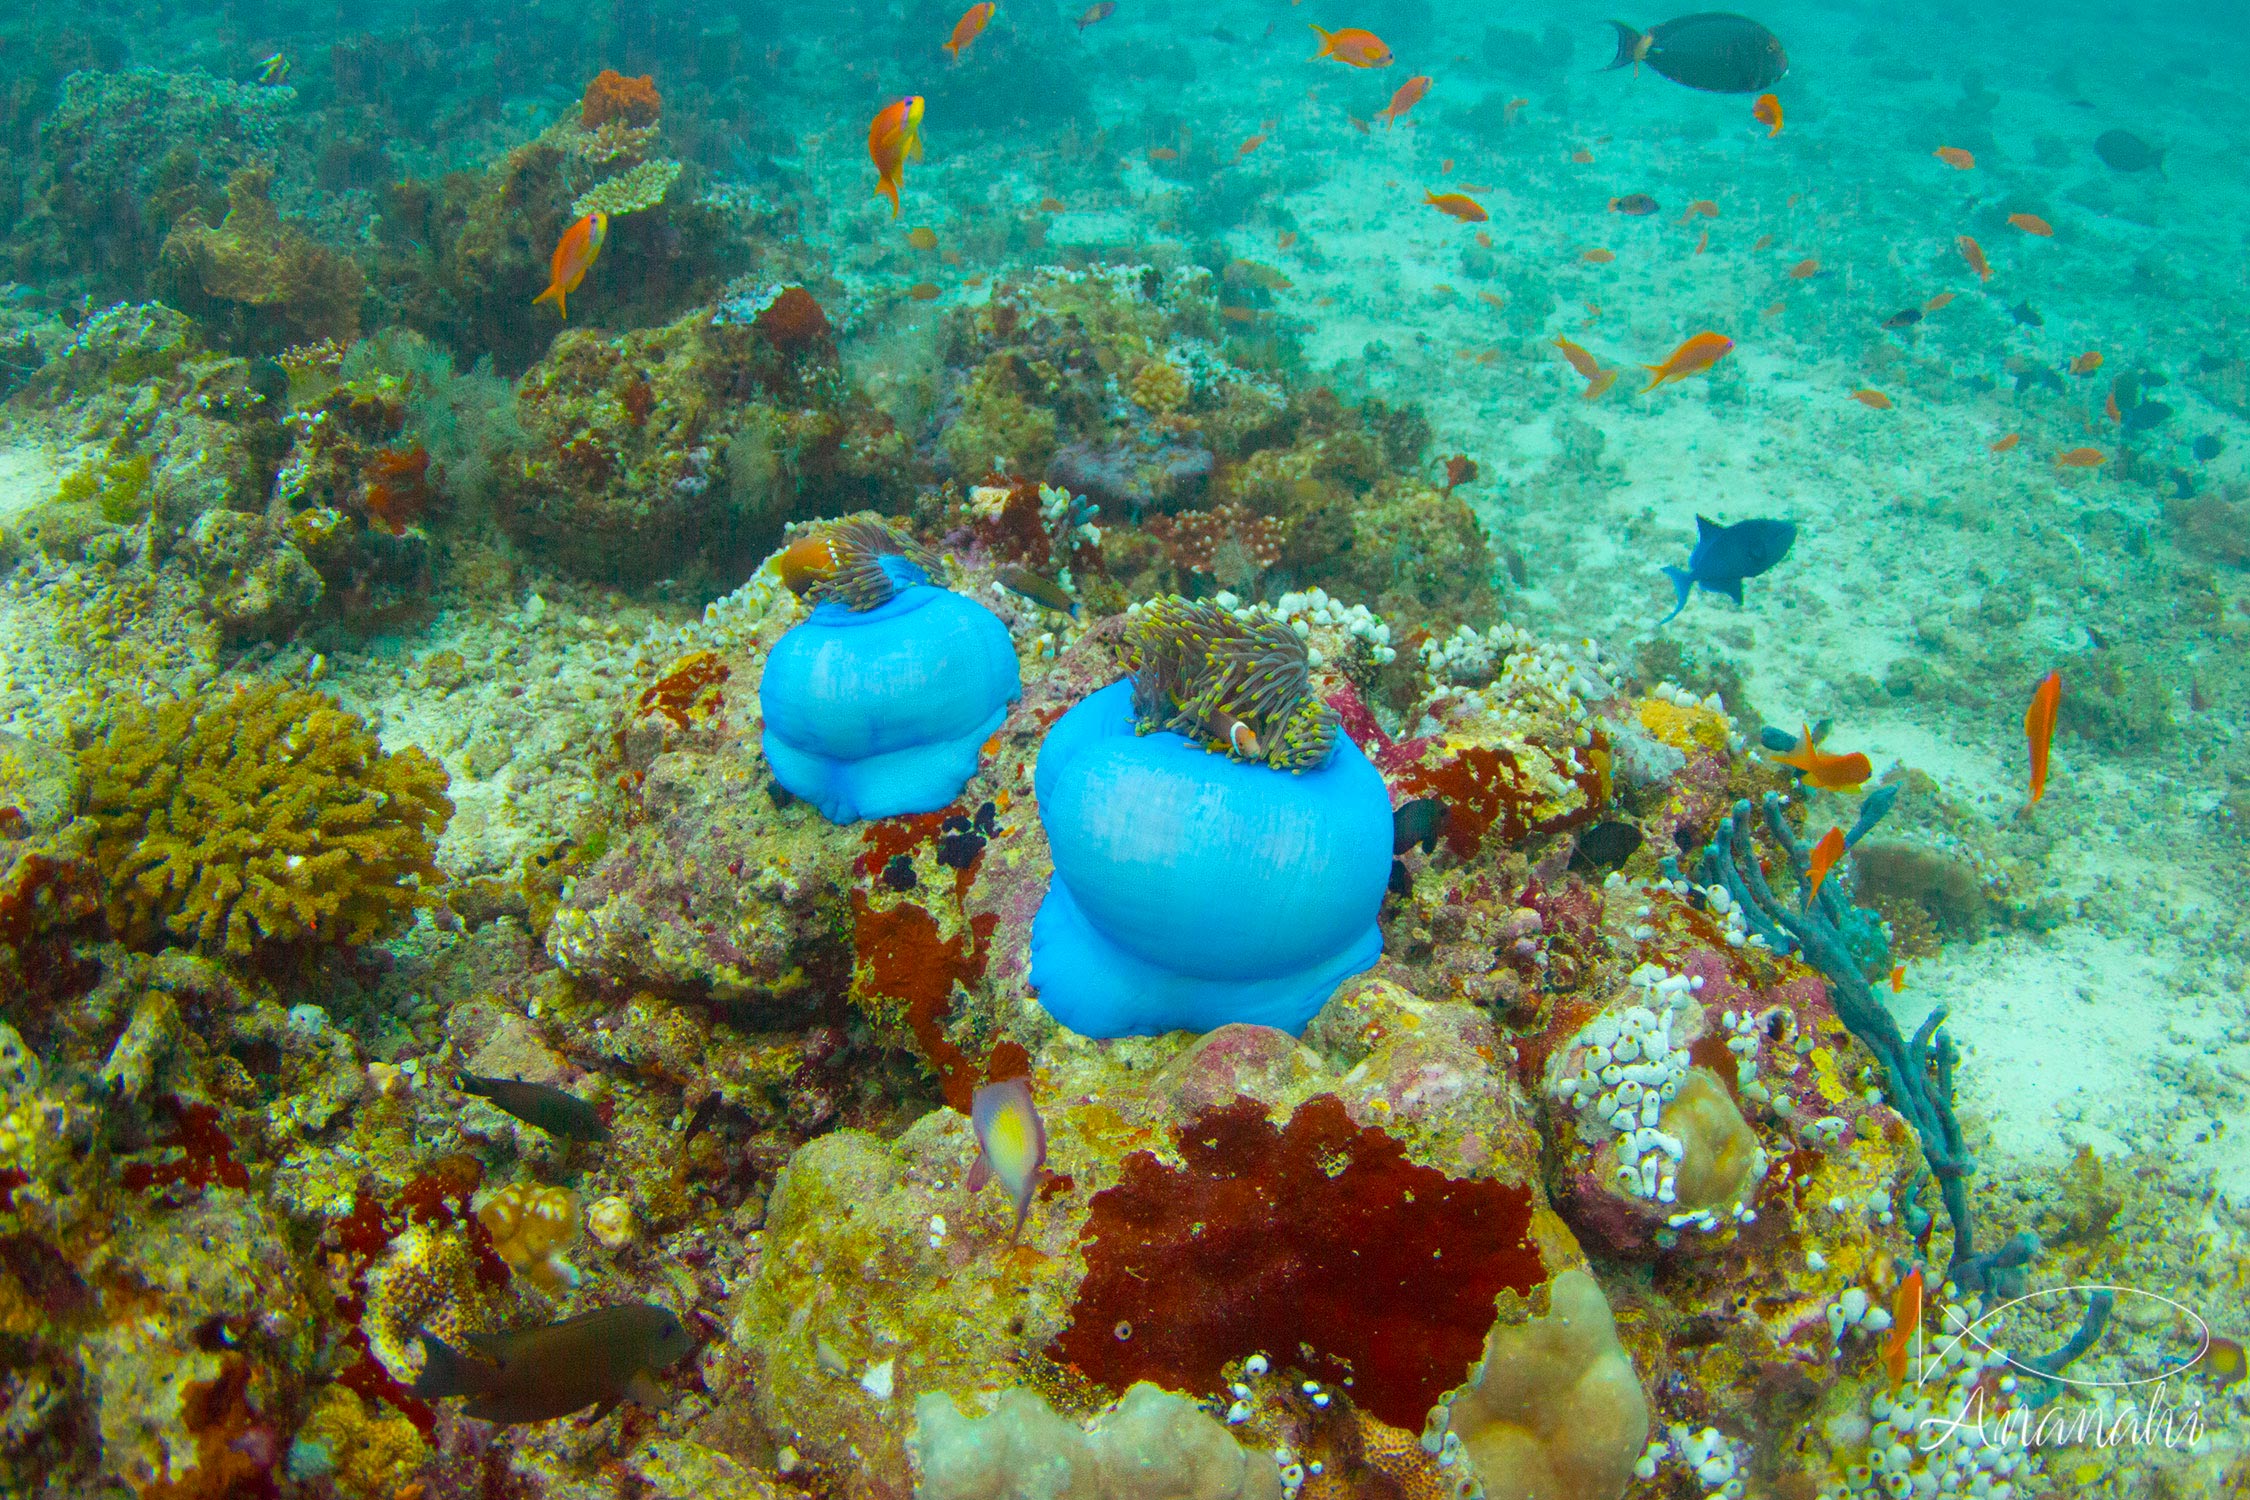 Magnificent sea anemone of Maldives